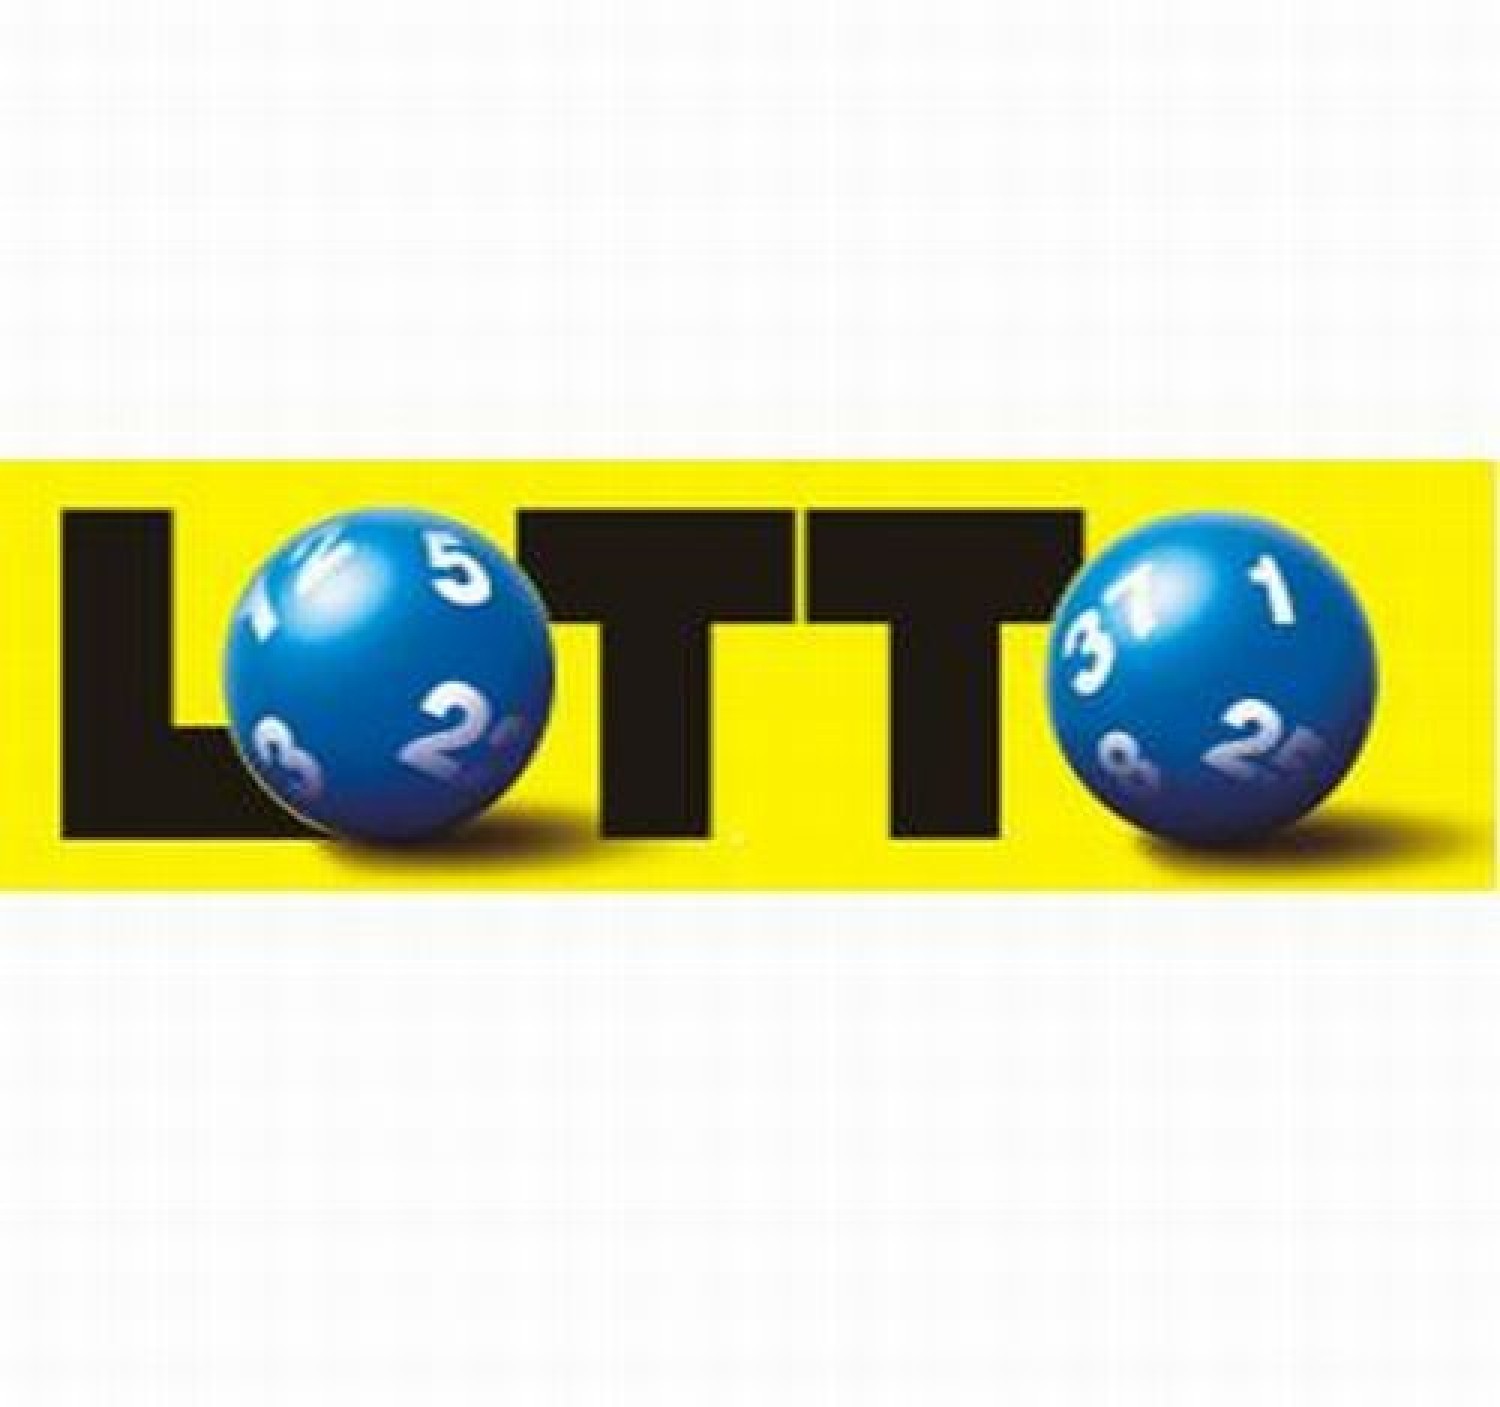 Lotto Online Erfahrung